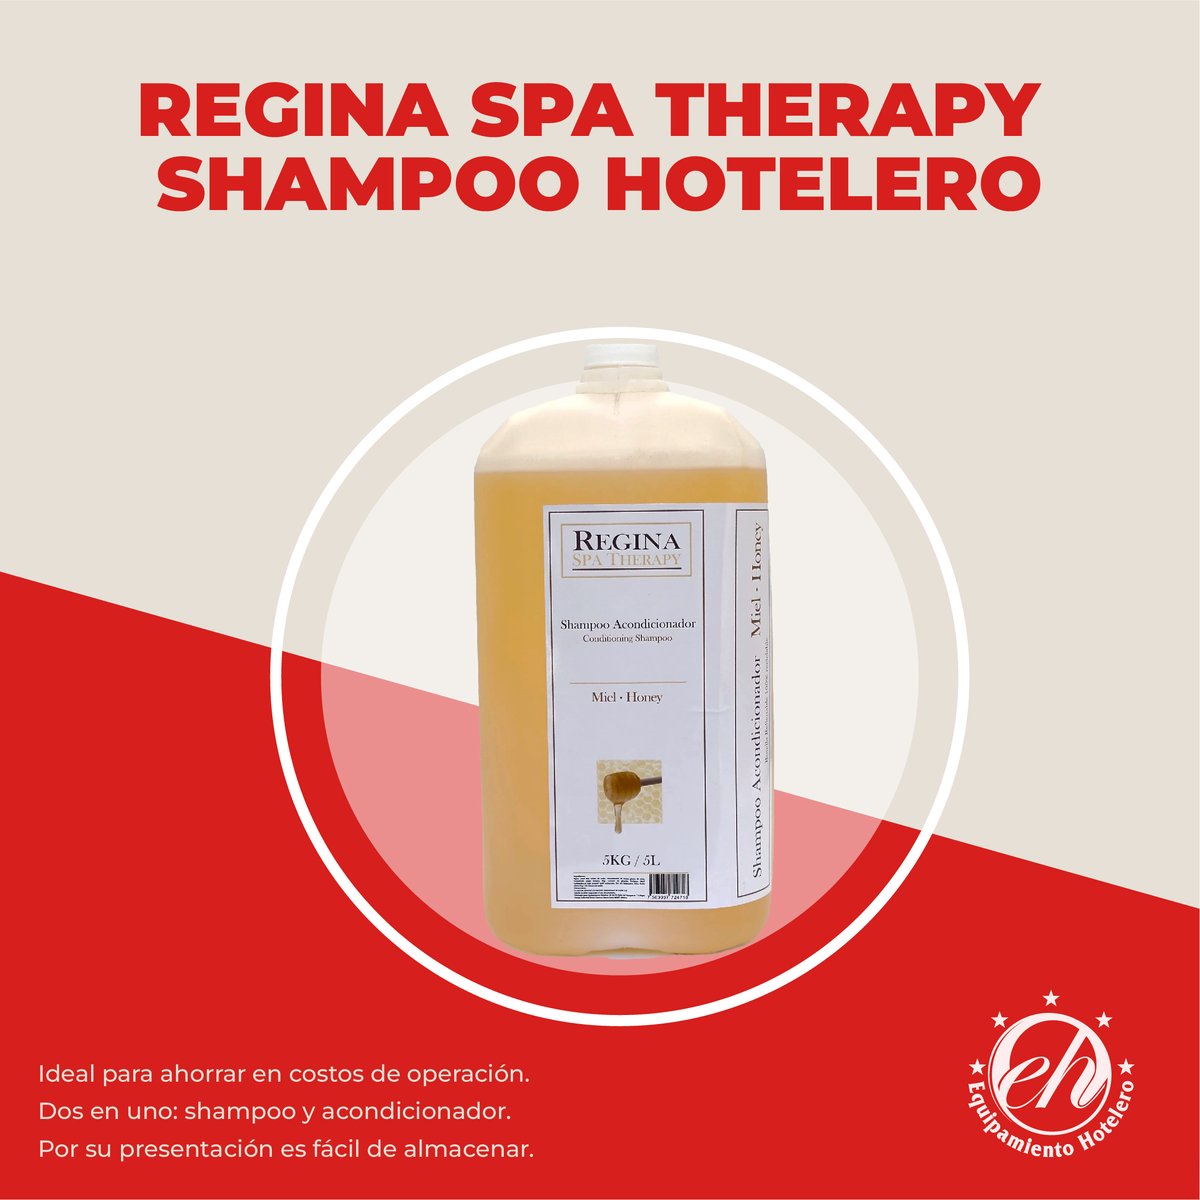 Enriquecido con esencias de miel de abeja, este shampoo ofrece una limpieza profunda y una fragancia relajante. #CuidadoDelCabello 
¡Descubre más sobre este producto en nuestro sitio web! 

shopequipamientohotelero.com/products/regin…